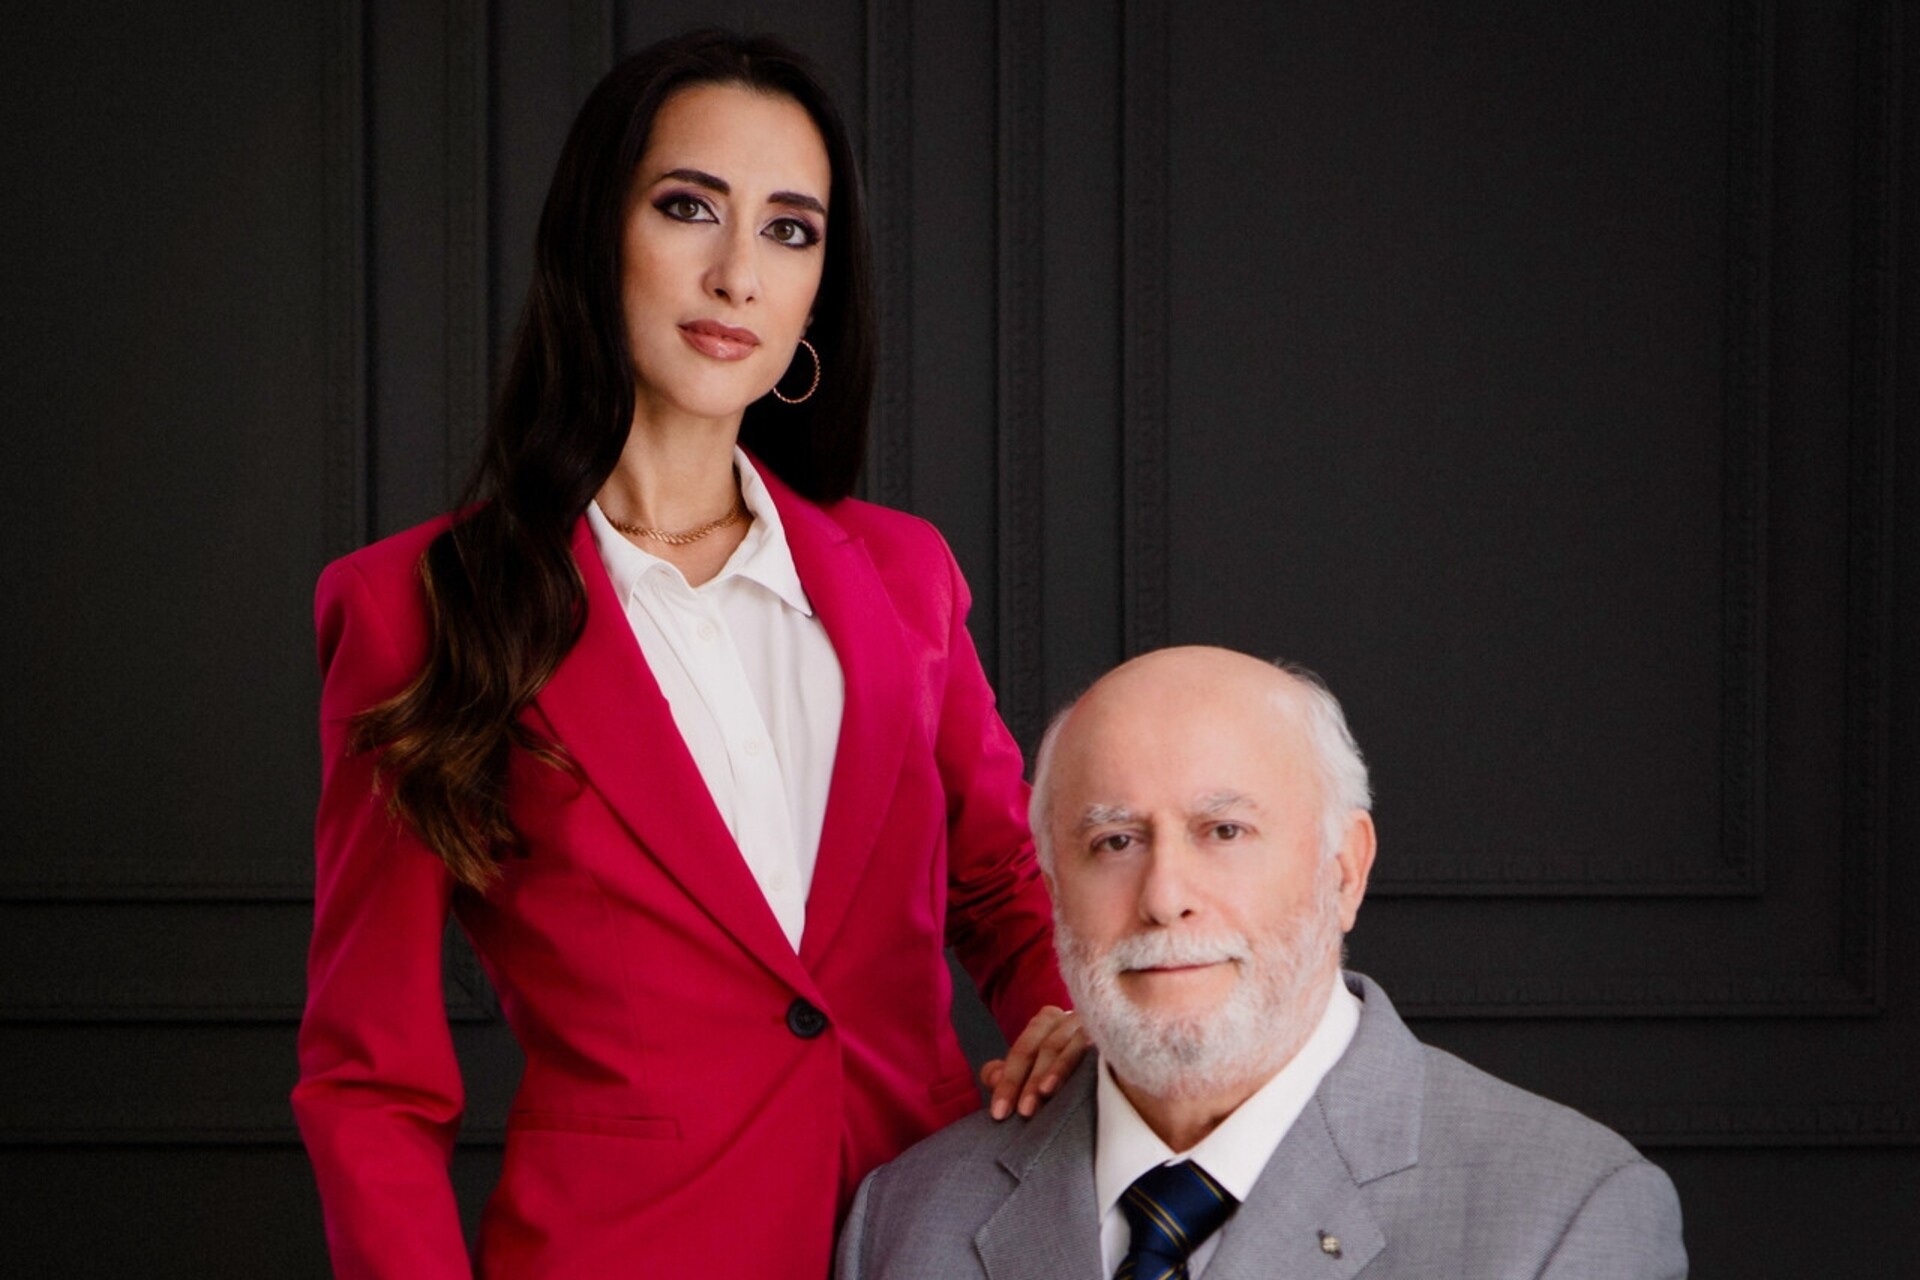 Eleonora Bafunno และพ่อของเธอ Pasquale เป็นเจ้าของ Bafunno Group ซึ่งตั้งอยู่ใน Ticino